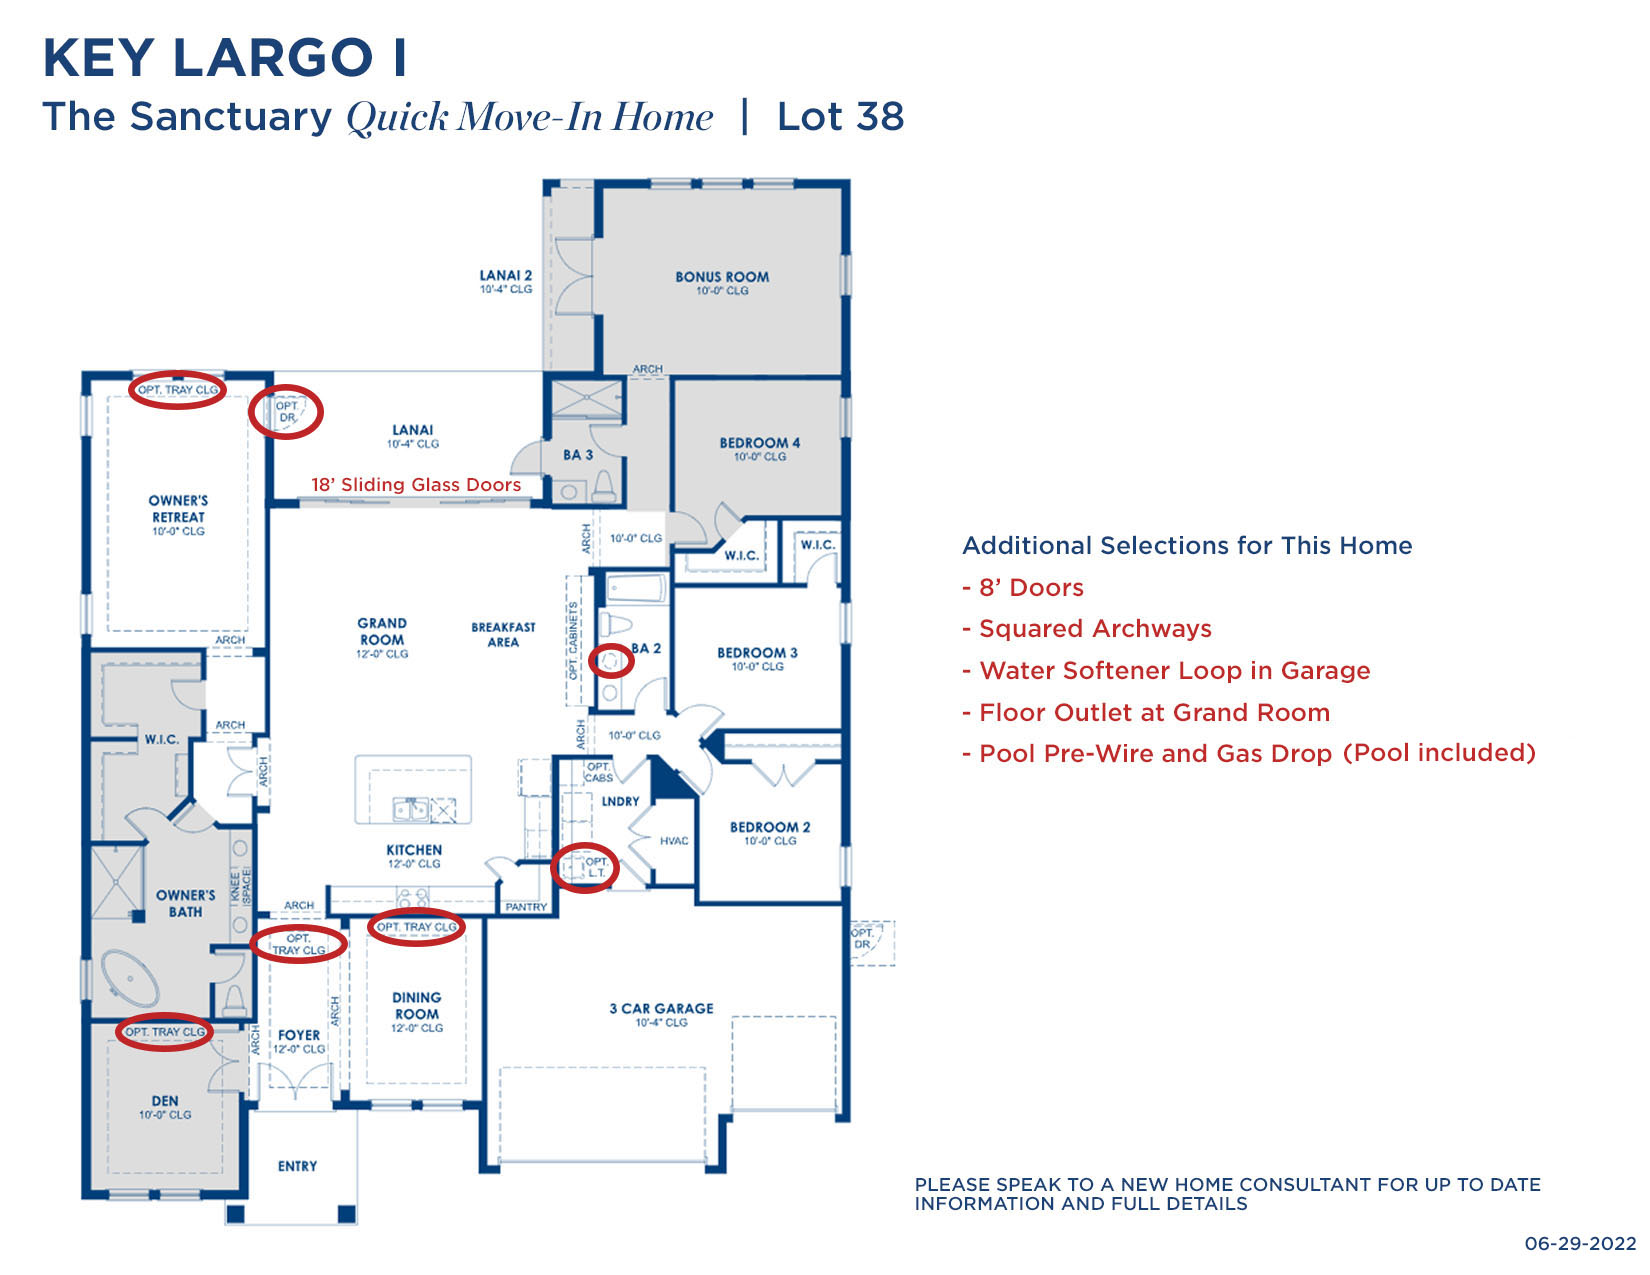 TS KEY LARGO I 38 6.29.22 Floorplan